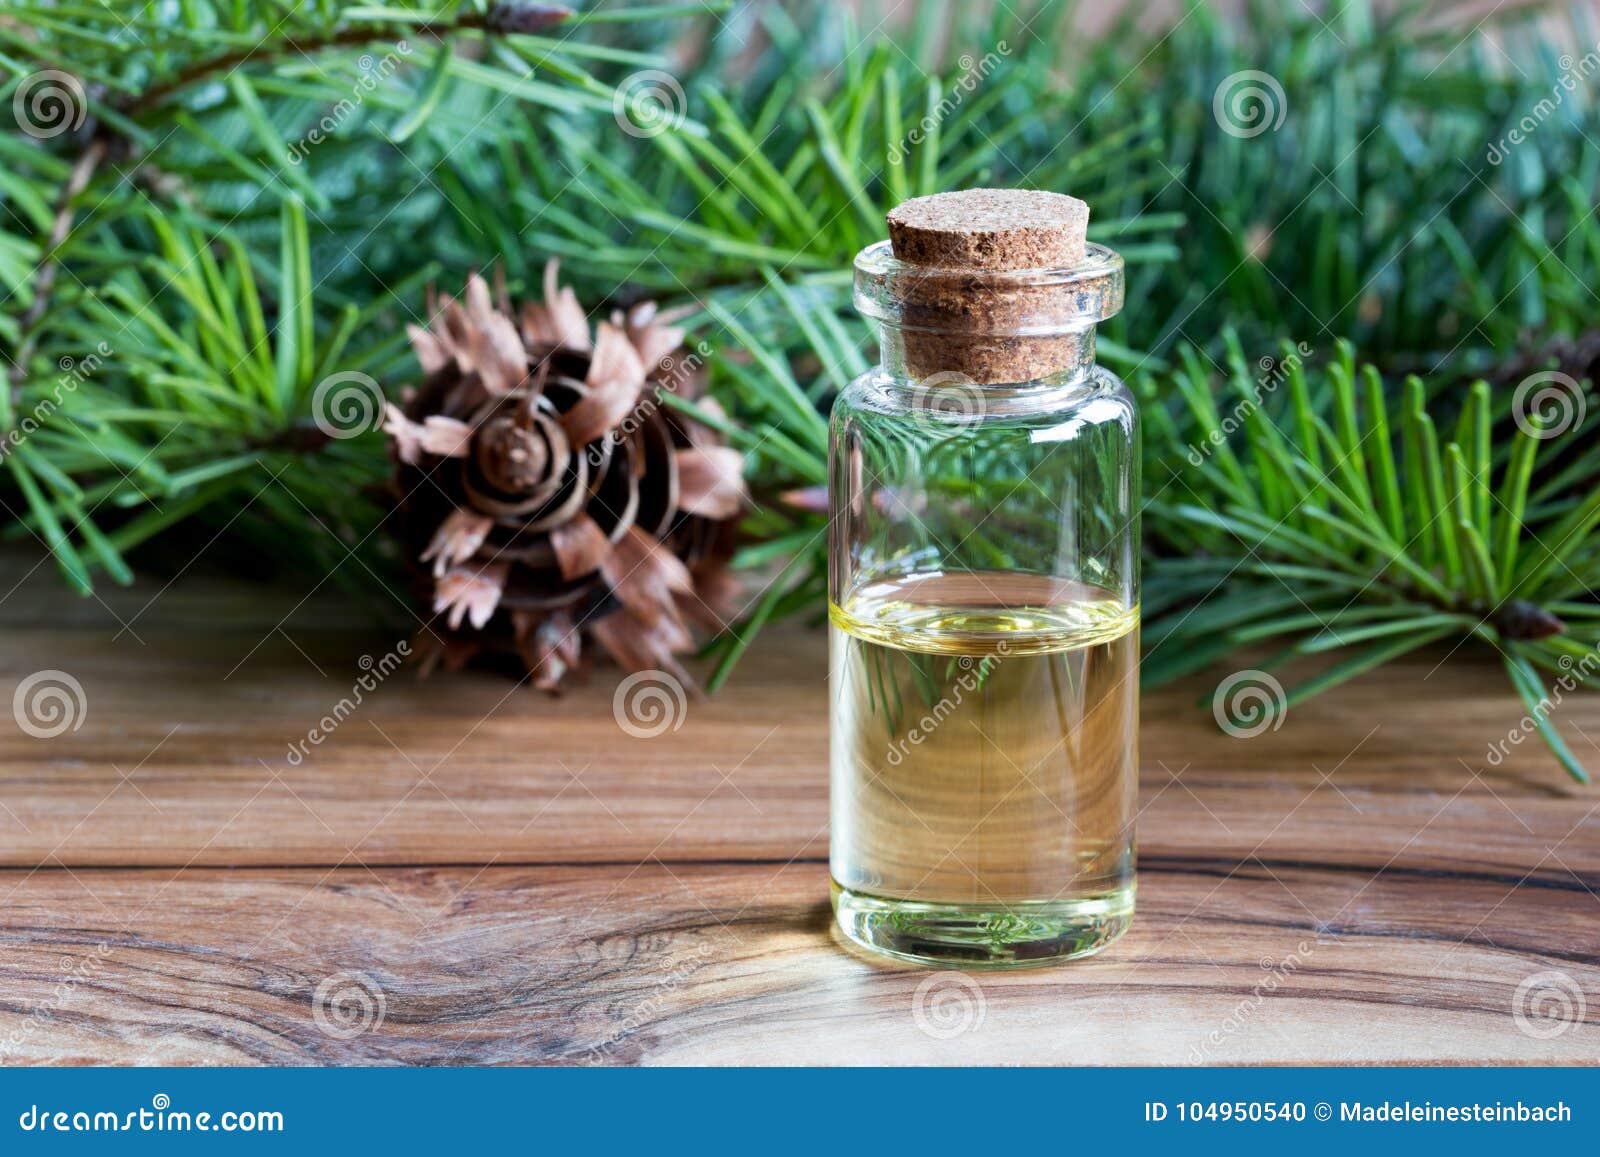 a bottle of douglas fir essential oil with fresh douglas fir bra